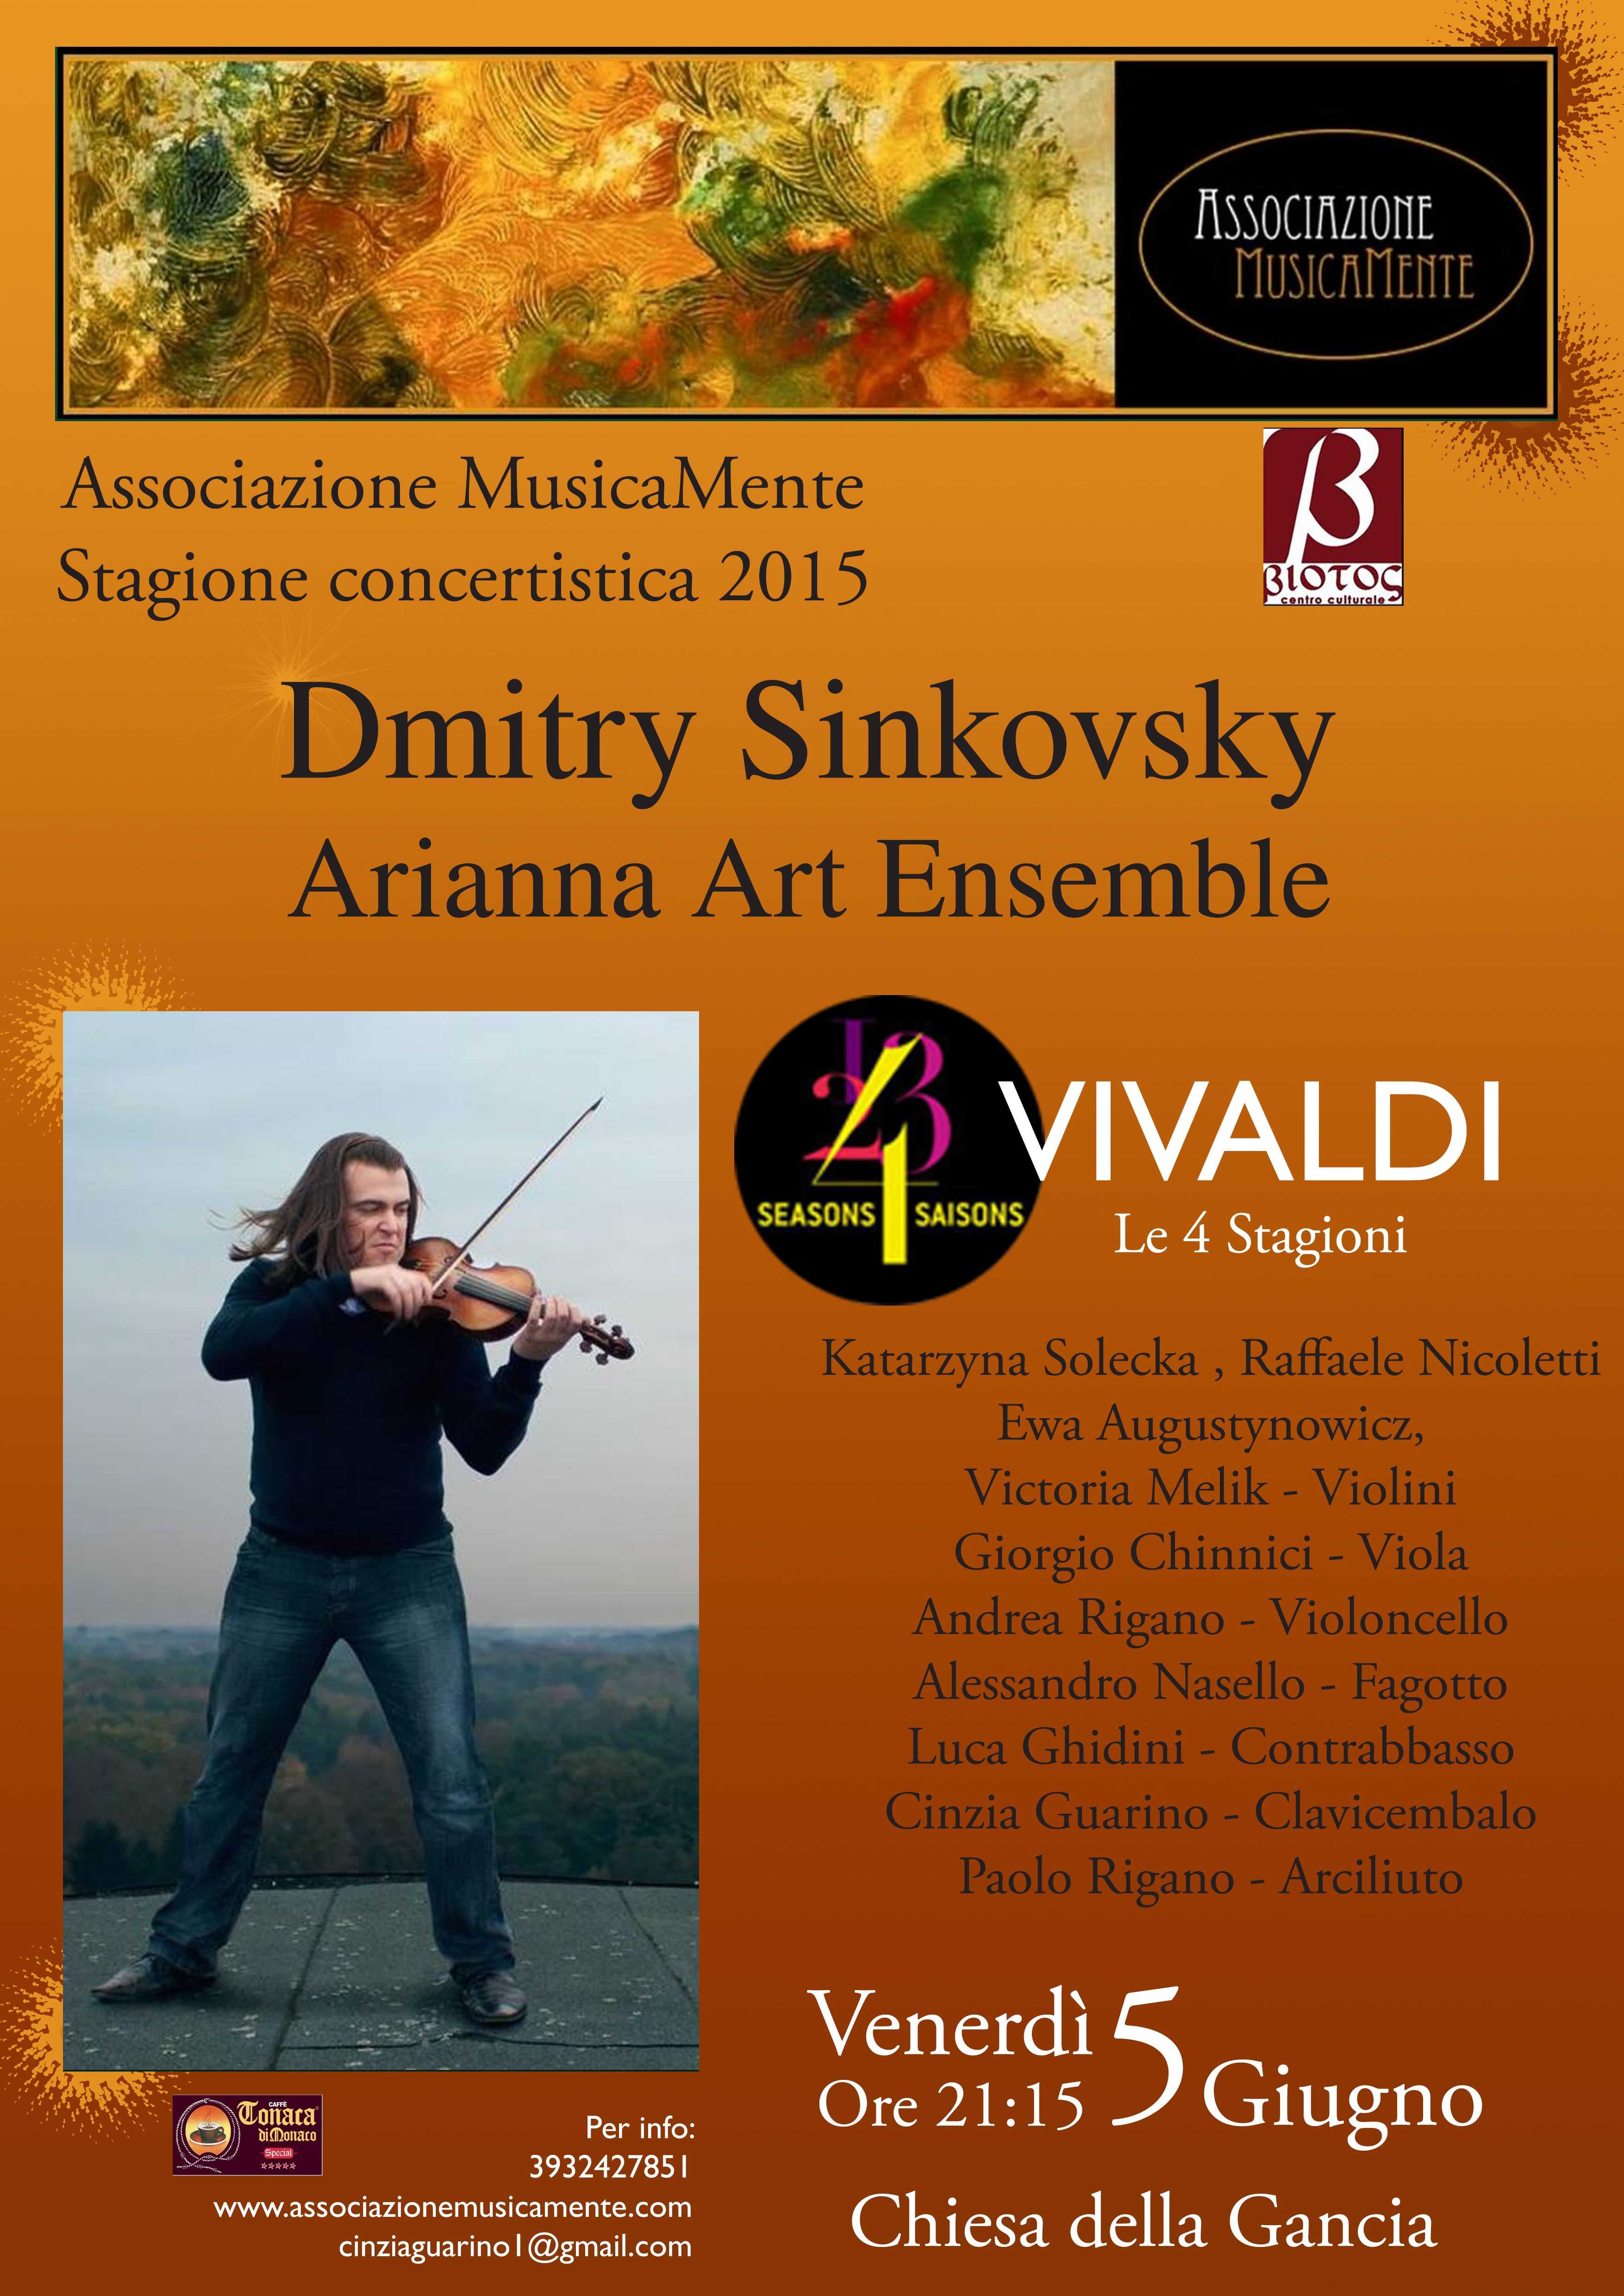 Dmitry Dinkovsky e Arianna Art Ensemble